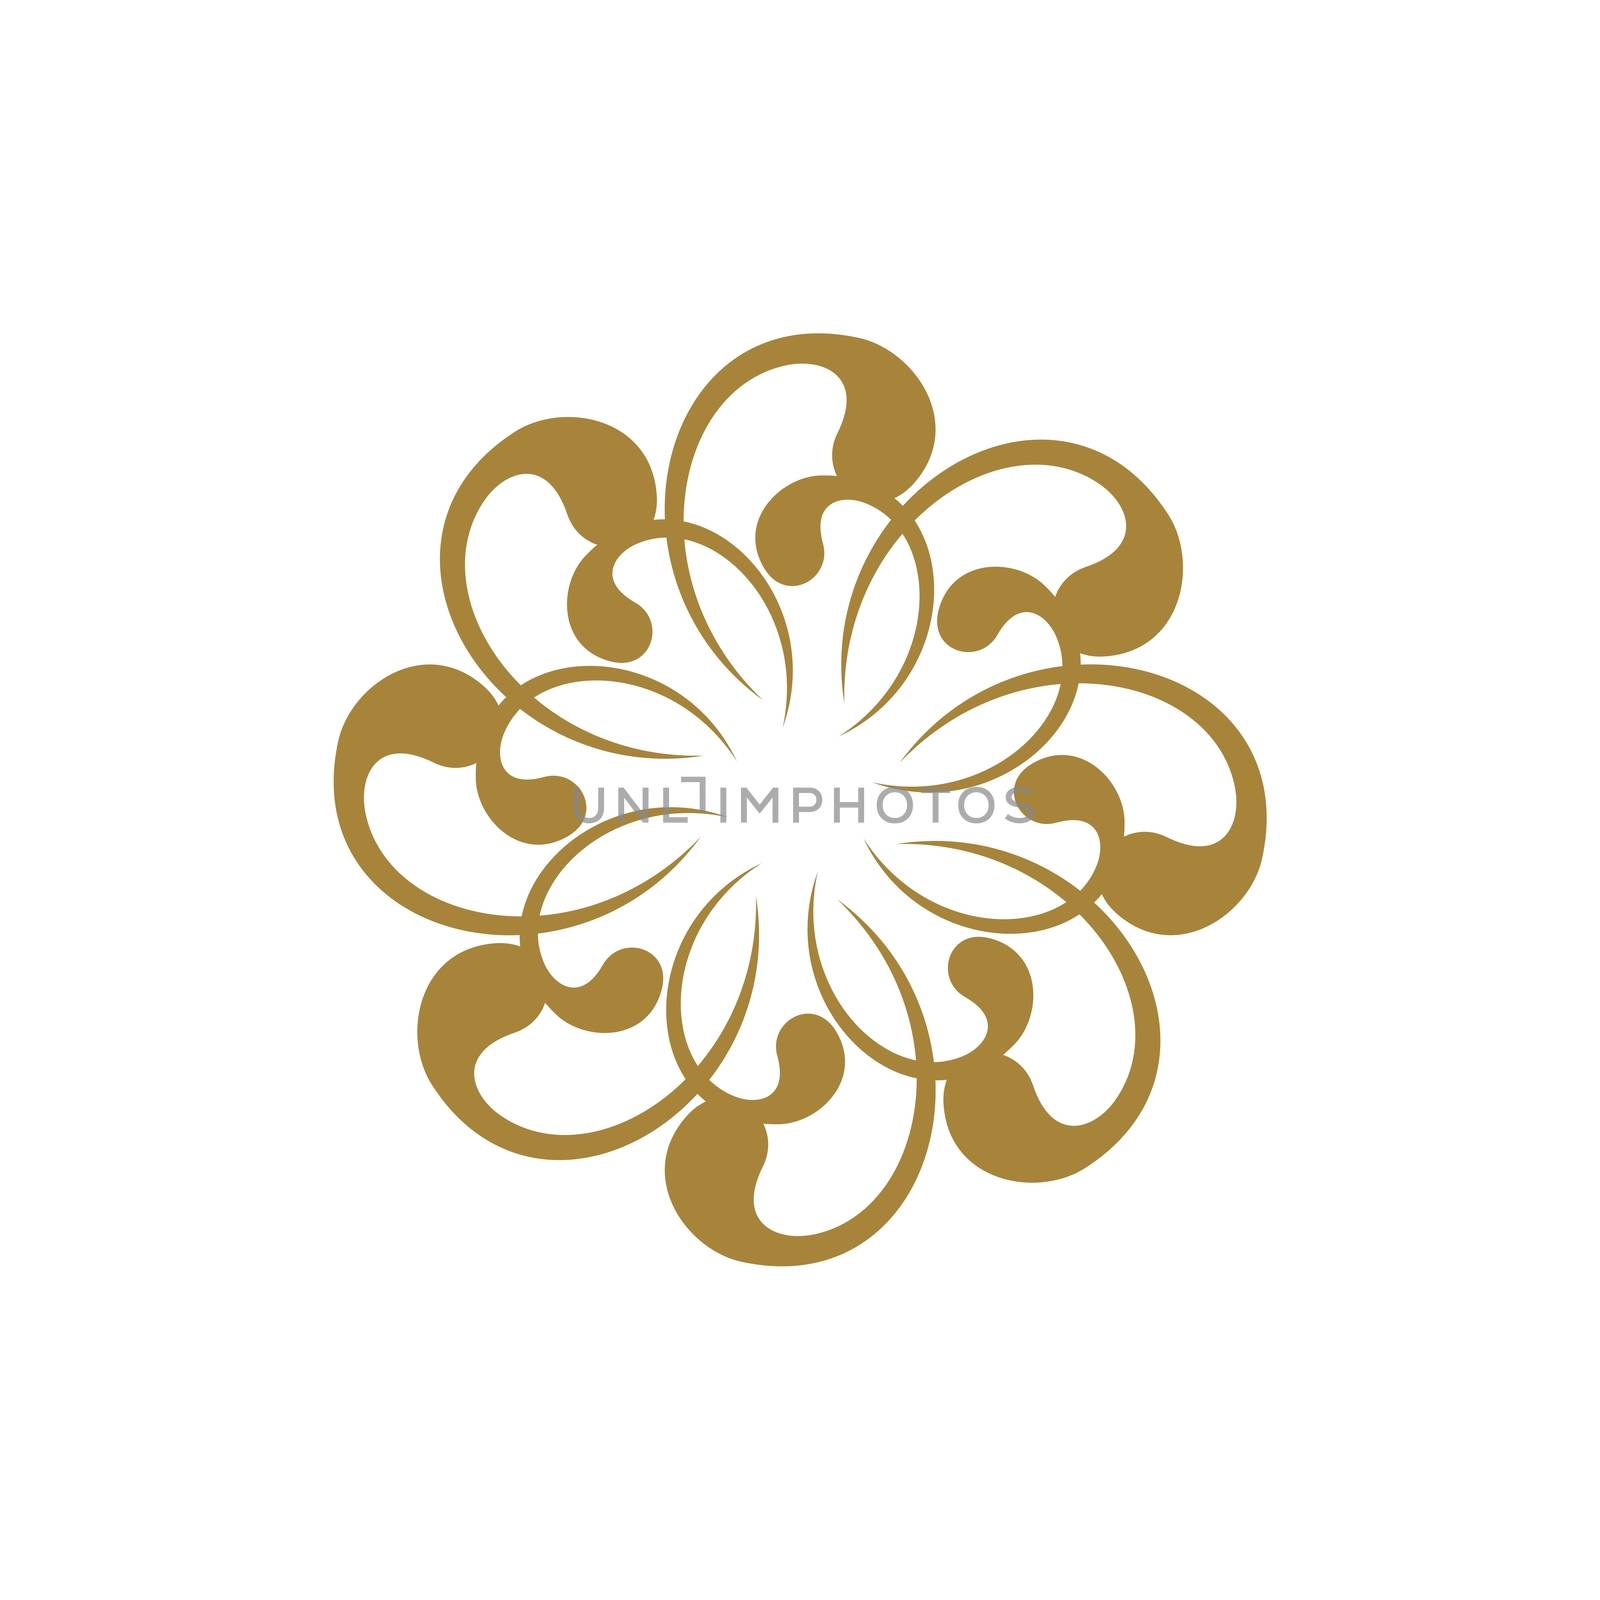 Ornamental Gold Blossom Flower Logo Template Illustration Design. Vector EPS 10.